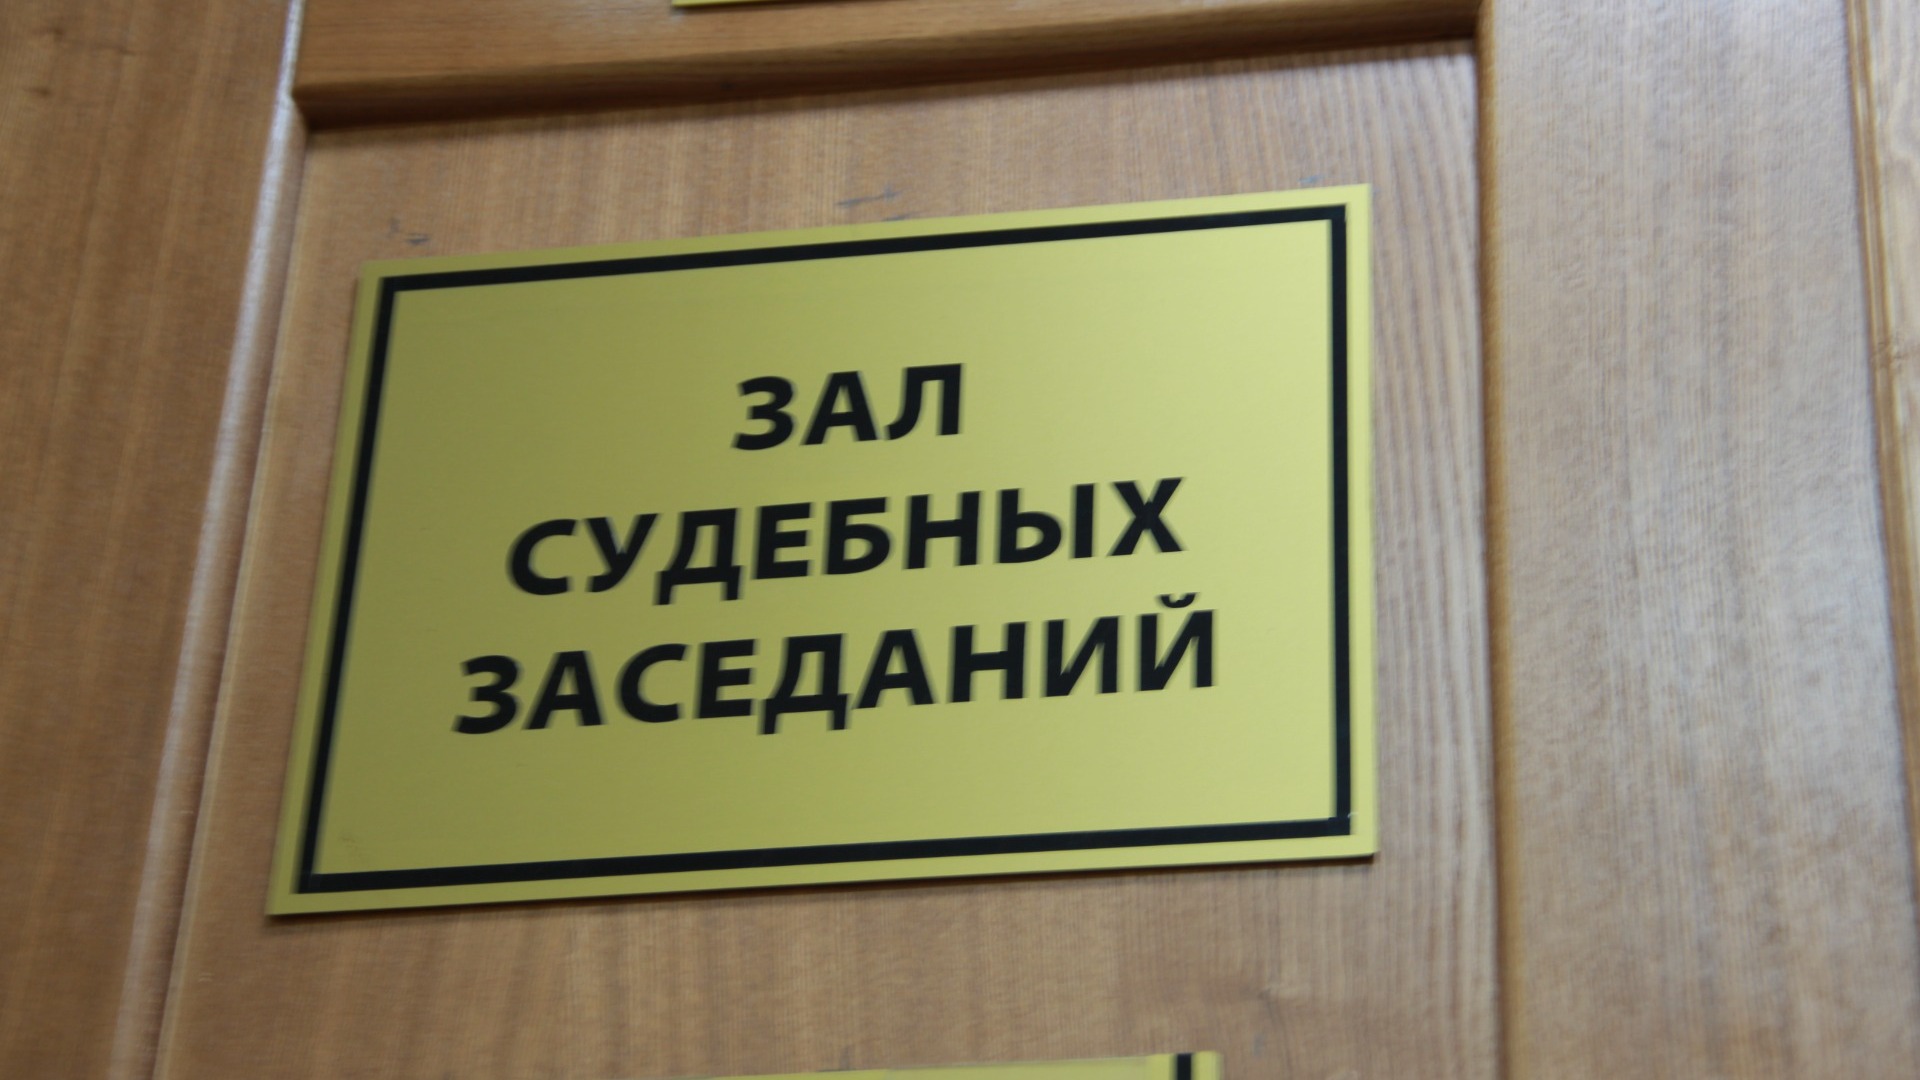 ВС РФ рассмотрит жалобу на решение об открытии дела на экс-главу Ростовского облсуда